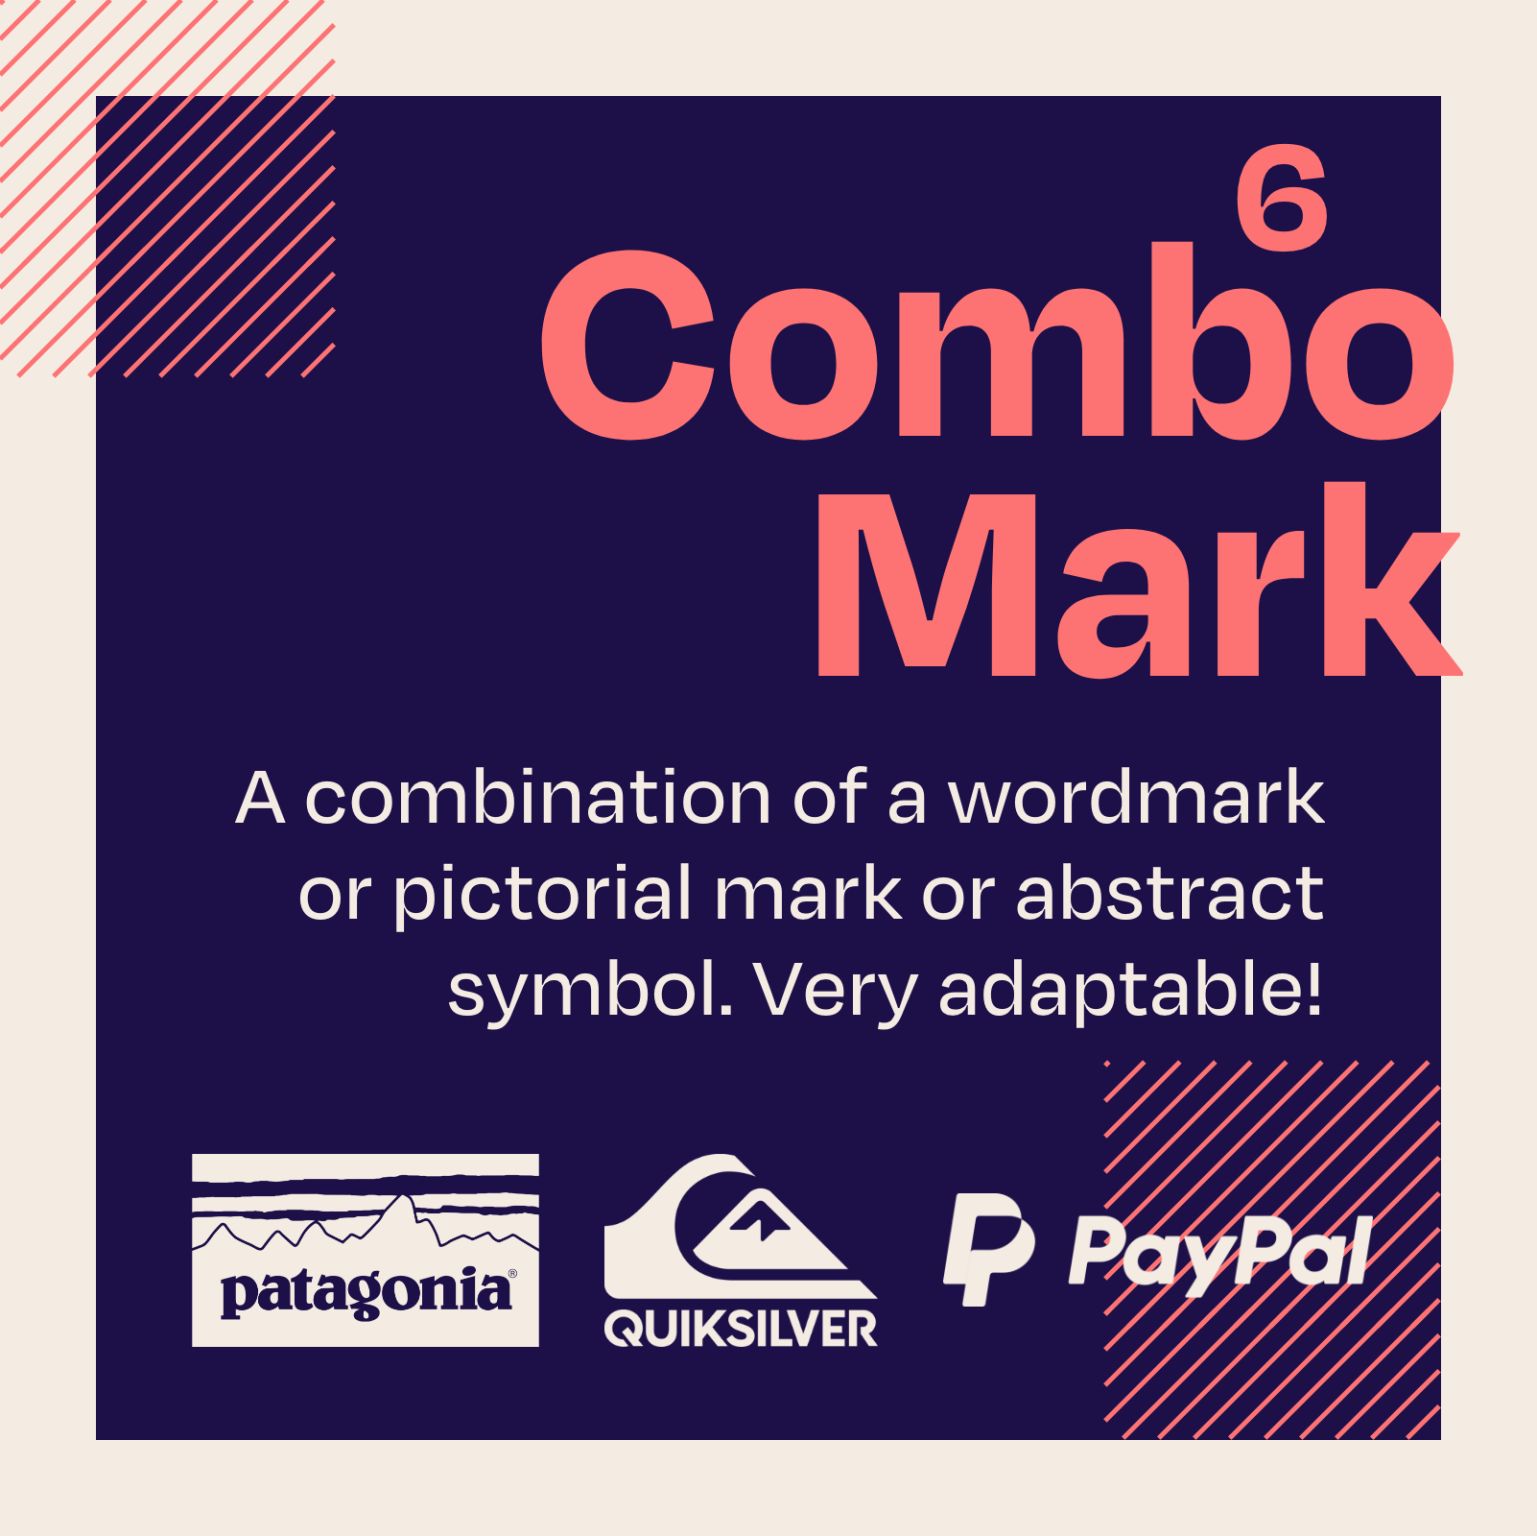 Types Of Logos - Combo Mark